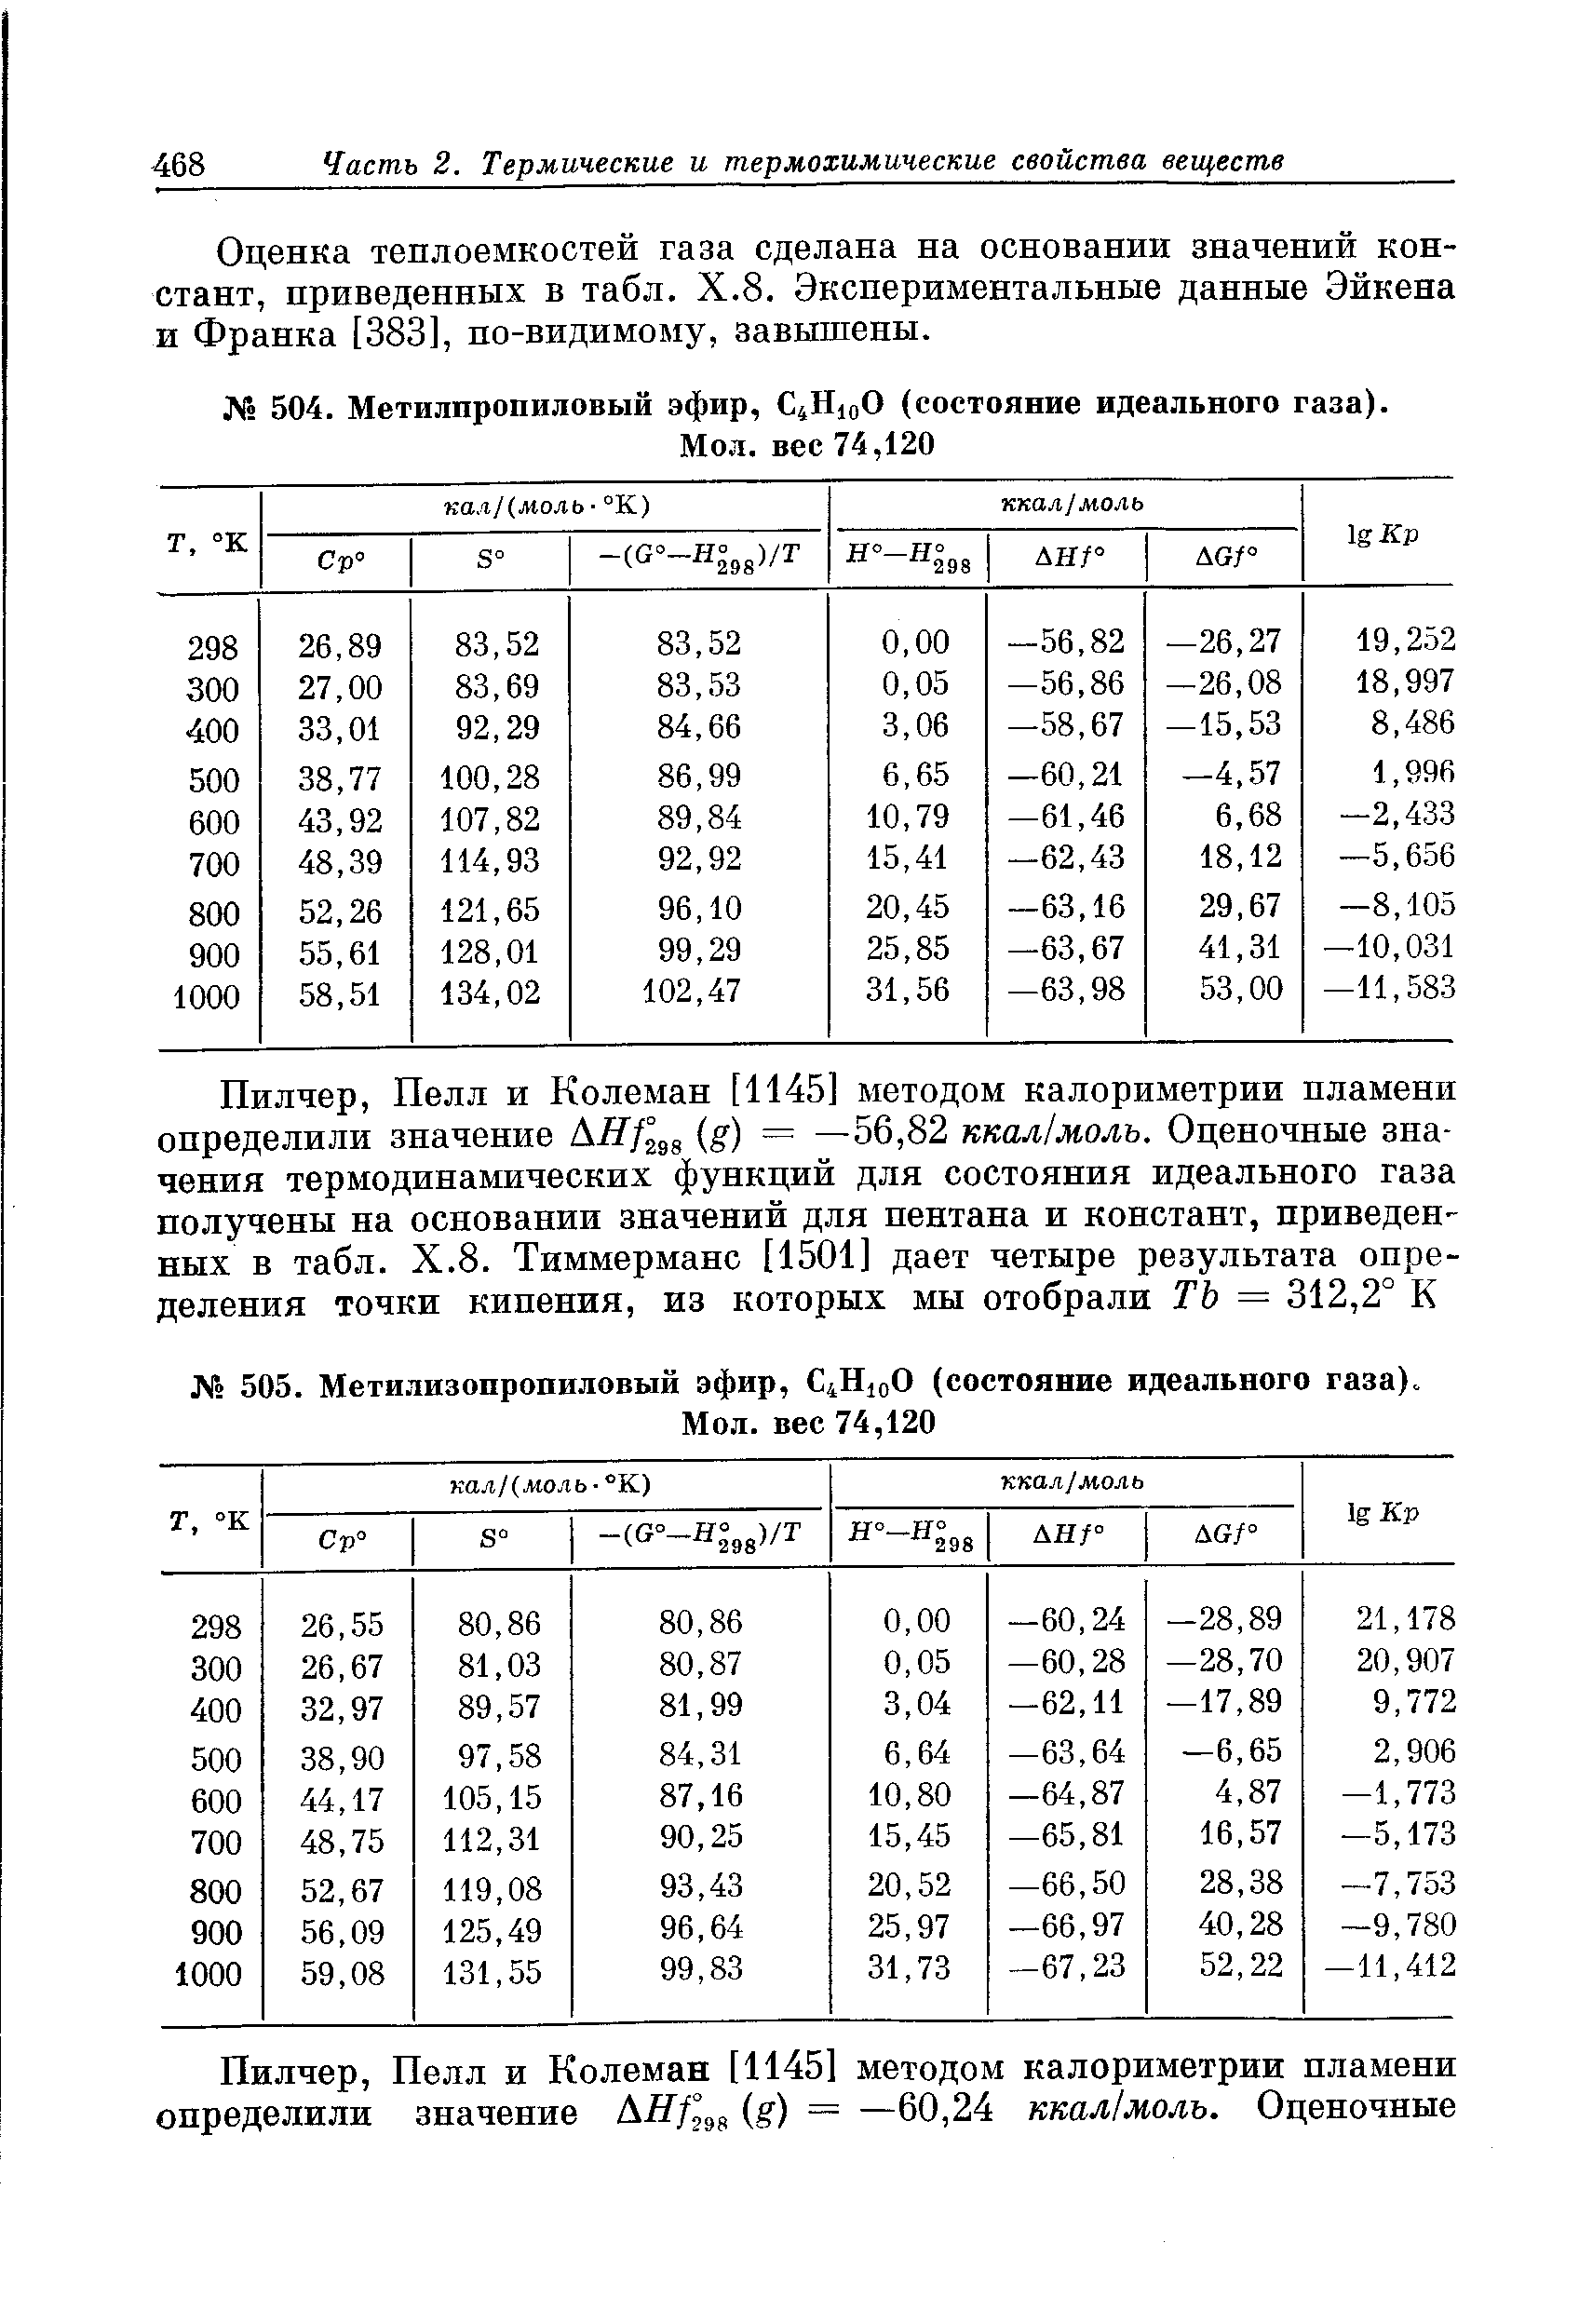 Оценка теплоемкостей газа сделана на основании значений констант, приведенных в табл. Х.8. Экспериментальные данные Эйкена и Франка [383], по-видимому, завышены.